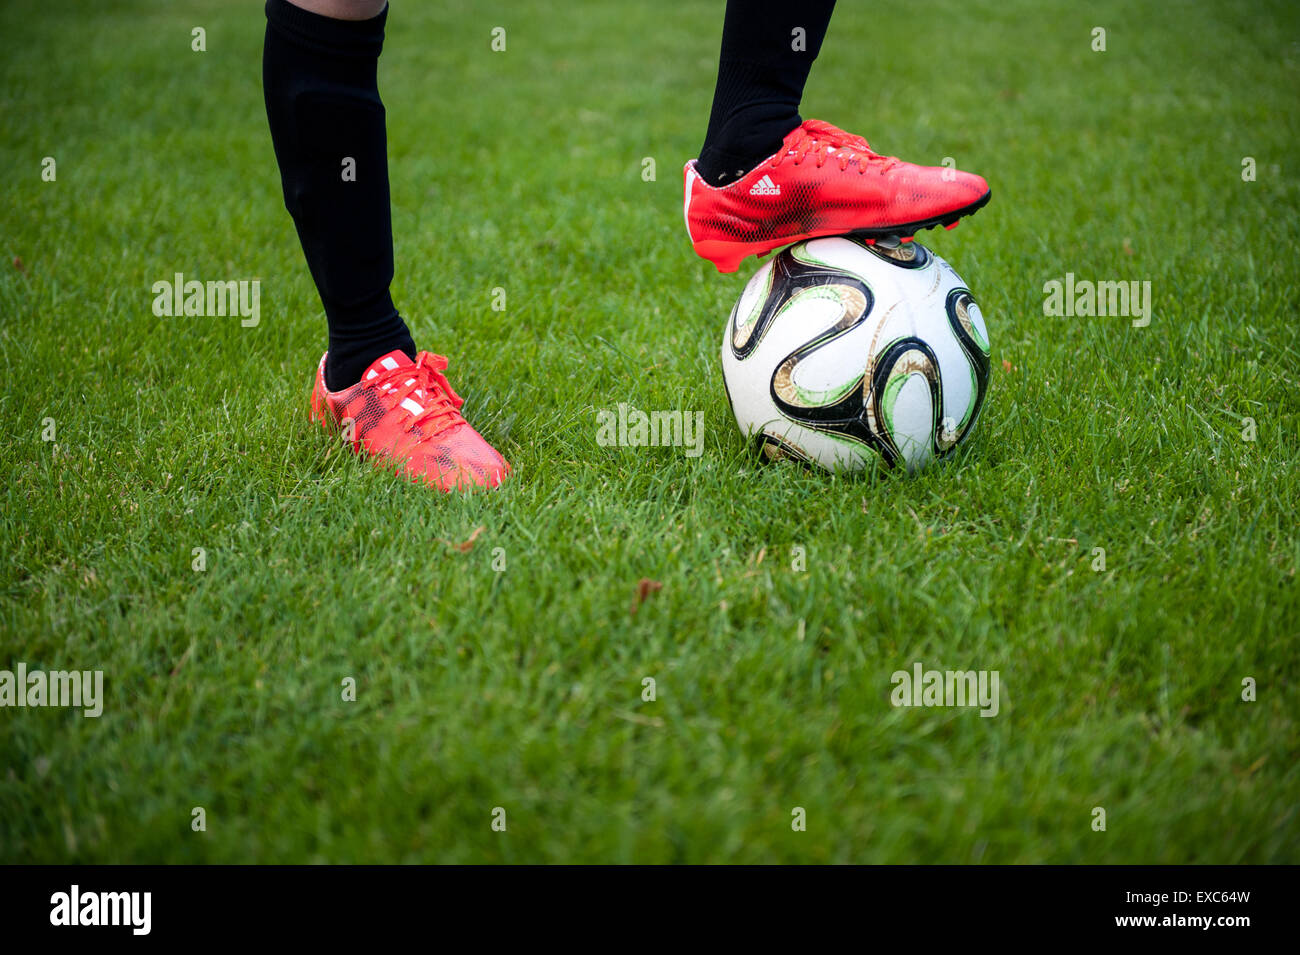 Portrait d'un jeune garçon avec son pied sur un terrain de football Banque D'Images